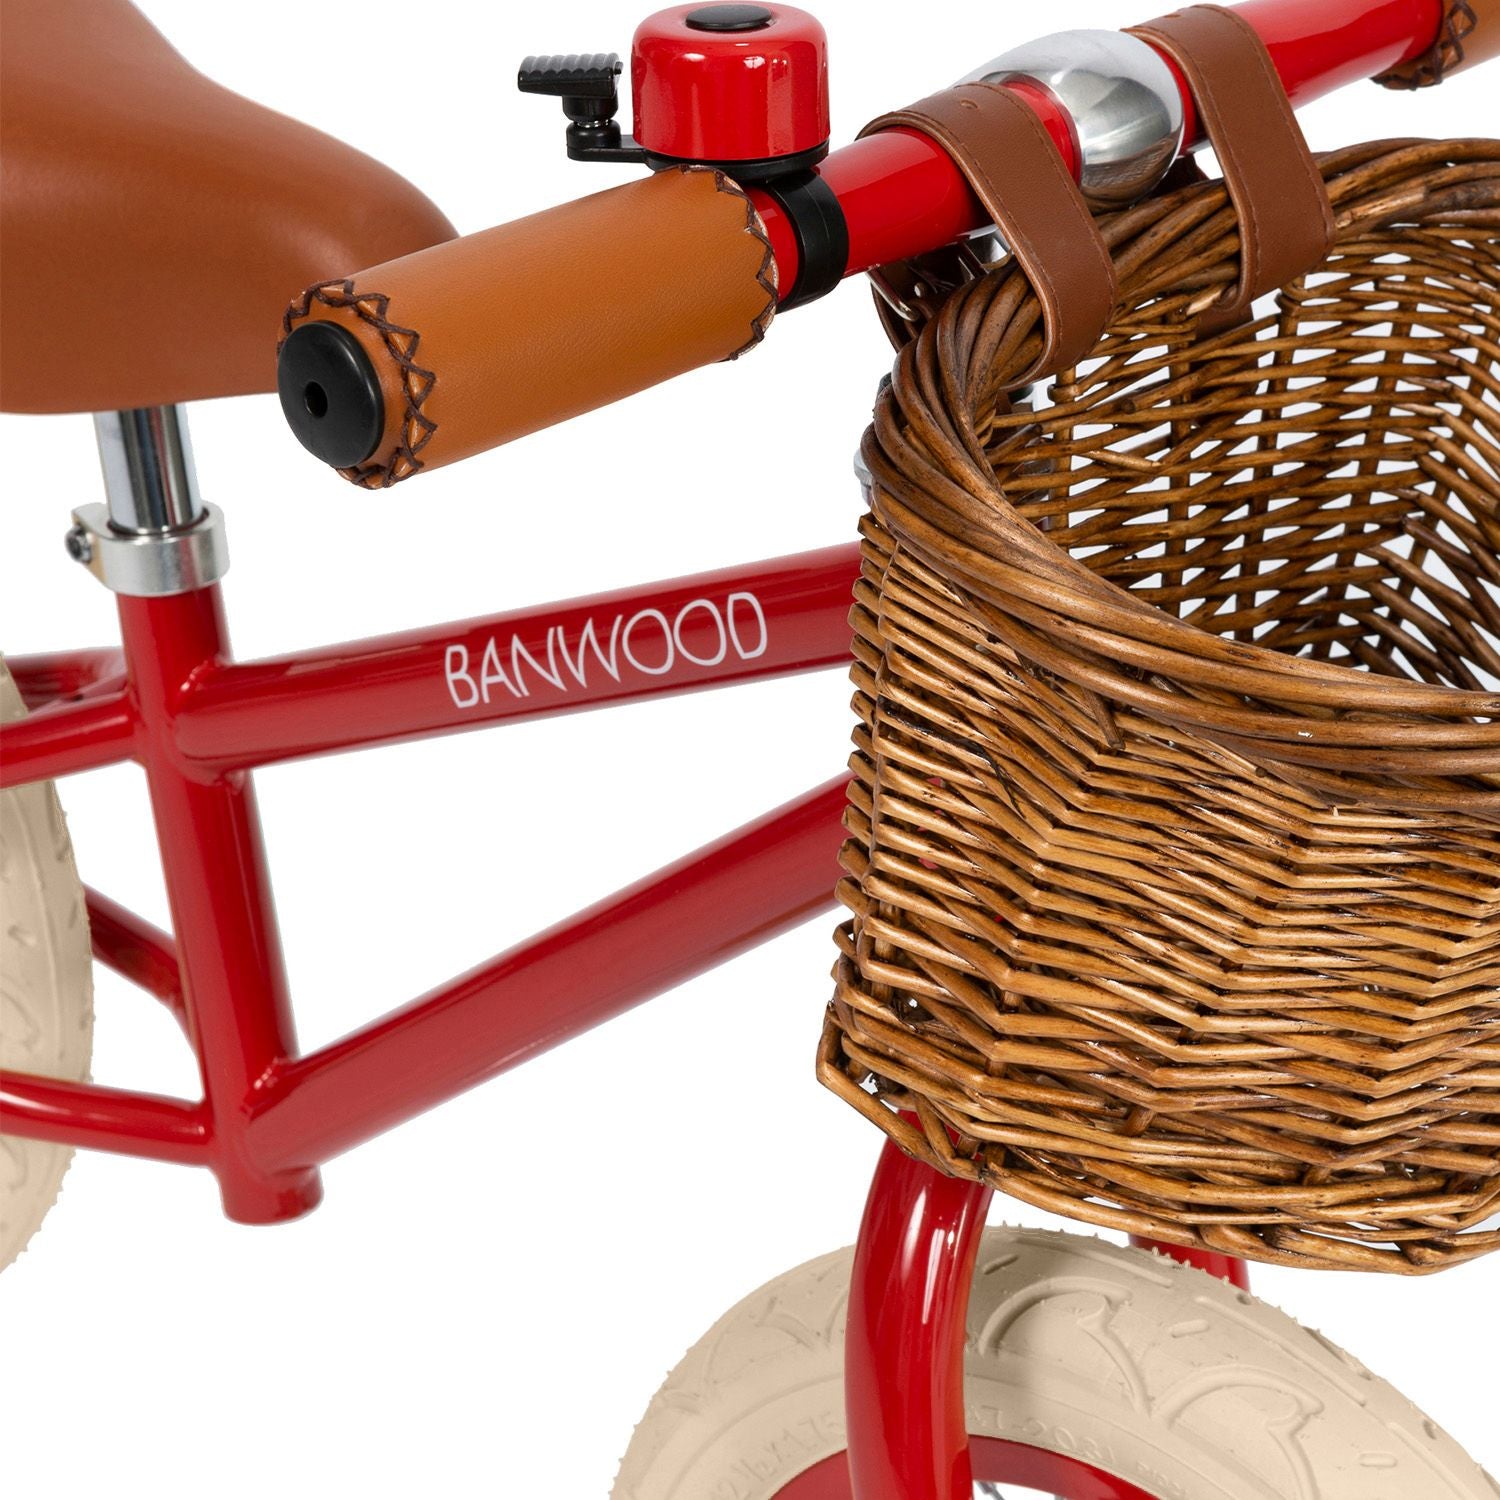 Banwood Balanscykel Red